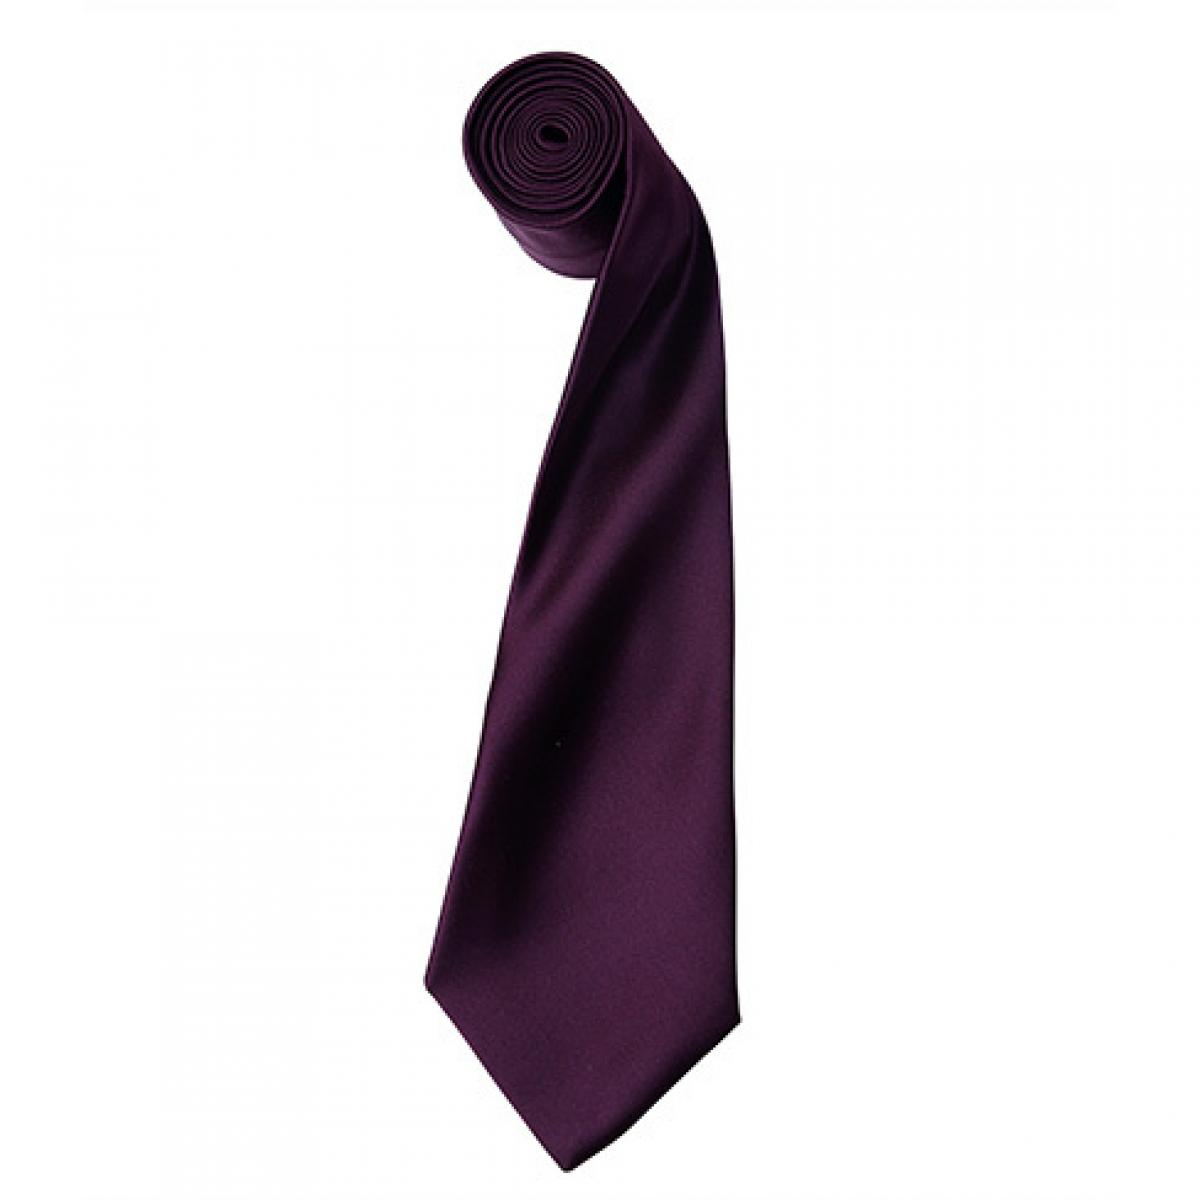 Hersteller: Premier Workwear Herstellernummer: PR750 Artikelbezeichnung: Satin Tie ´Colours´ / 144 x 8,5 cm Farbe: Aubergine (ca. Pantone 5115)